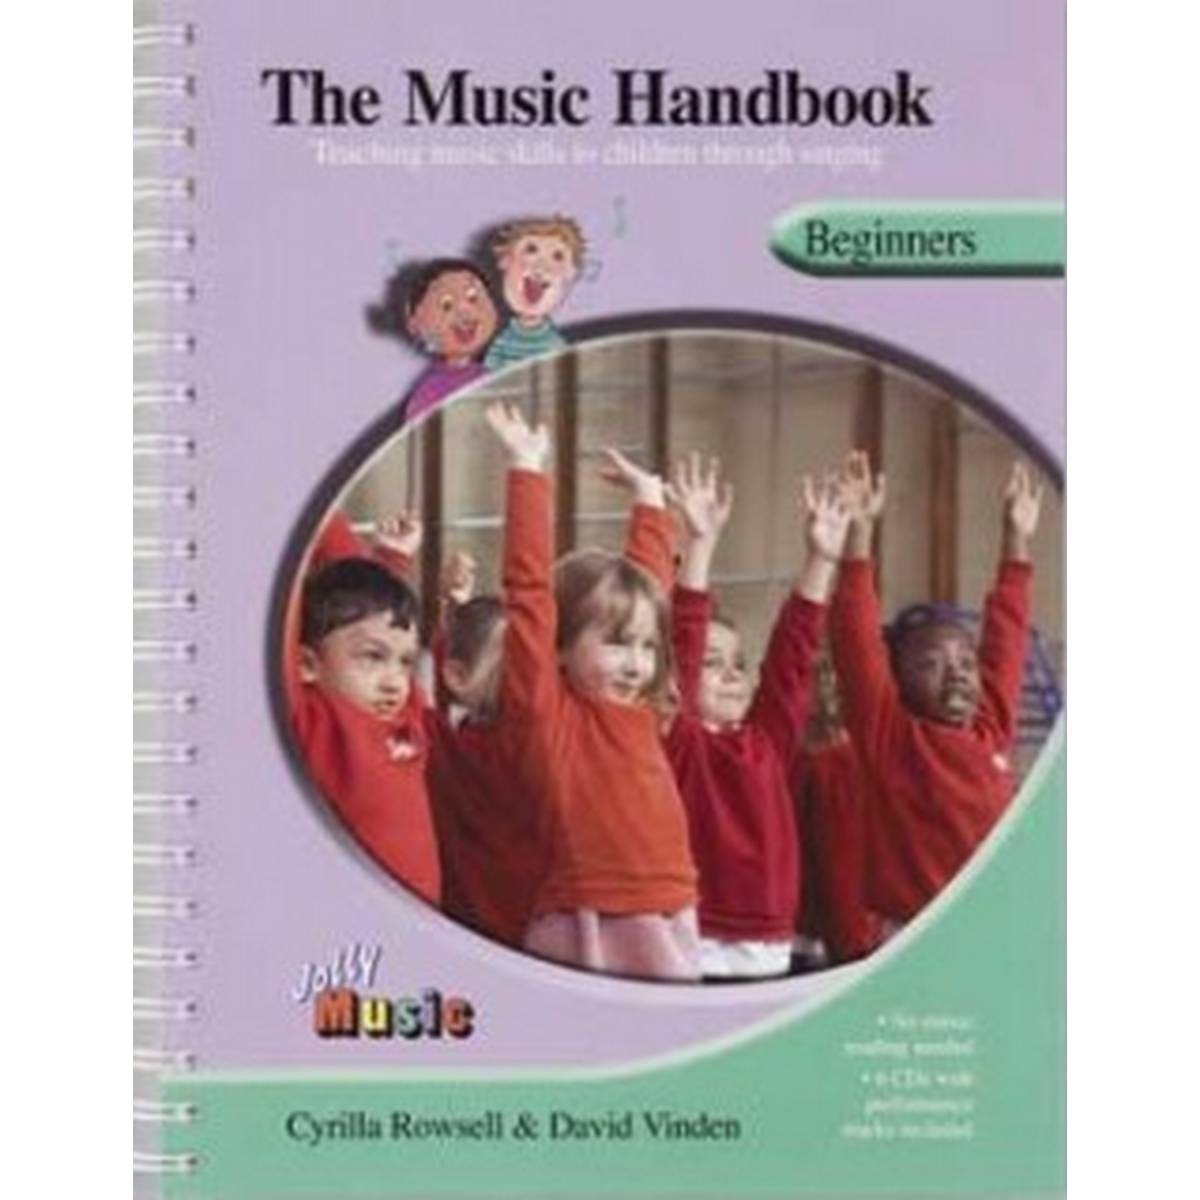 Jolly Music Handbook Beginners